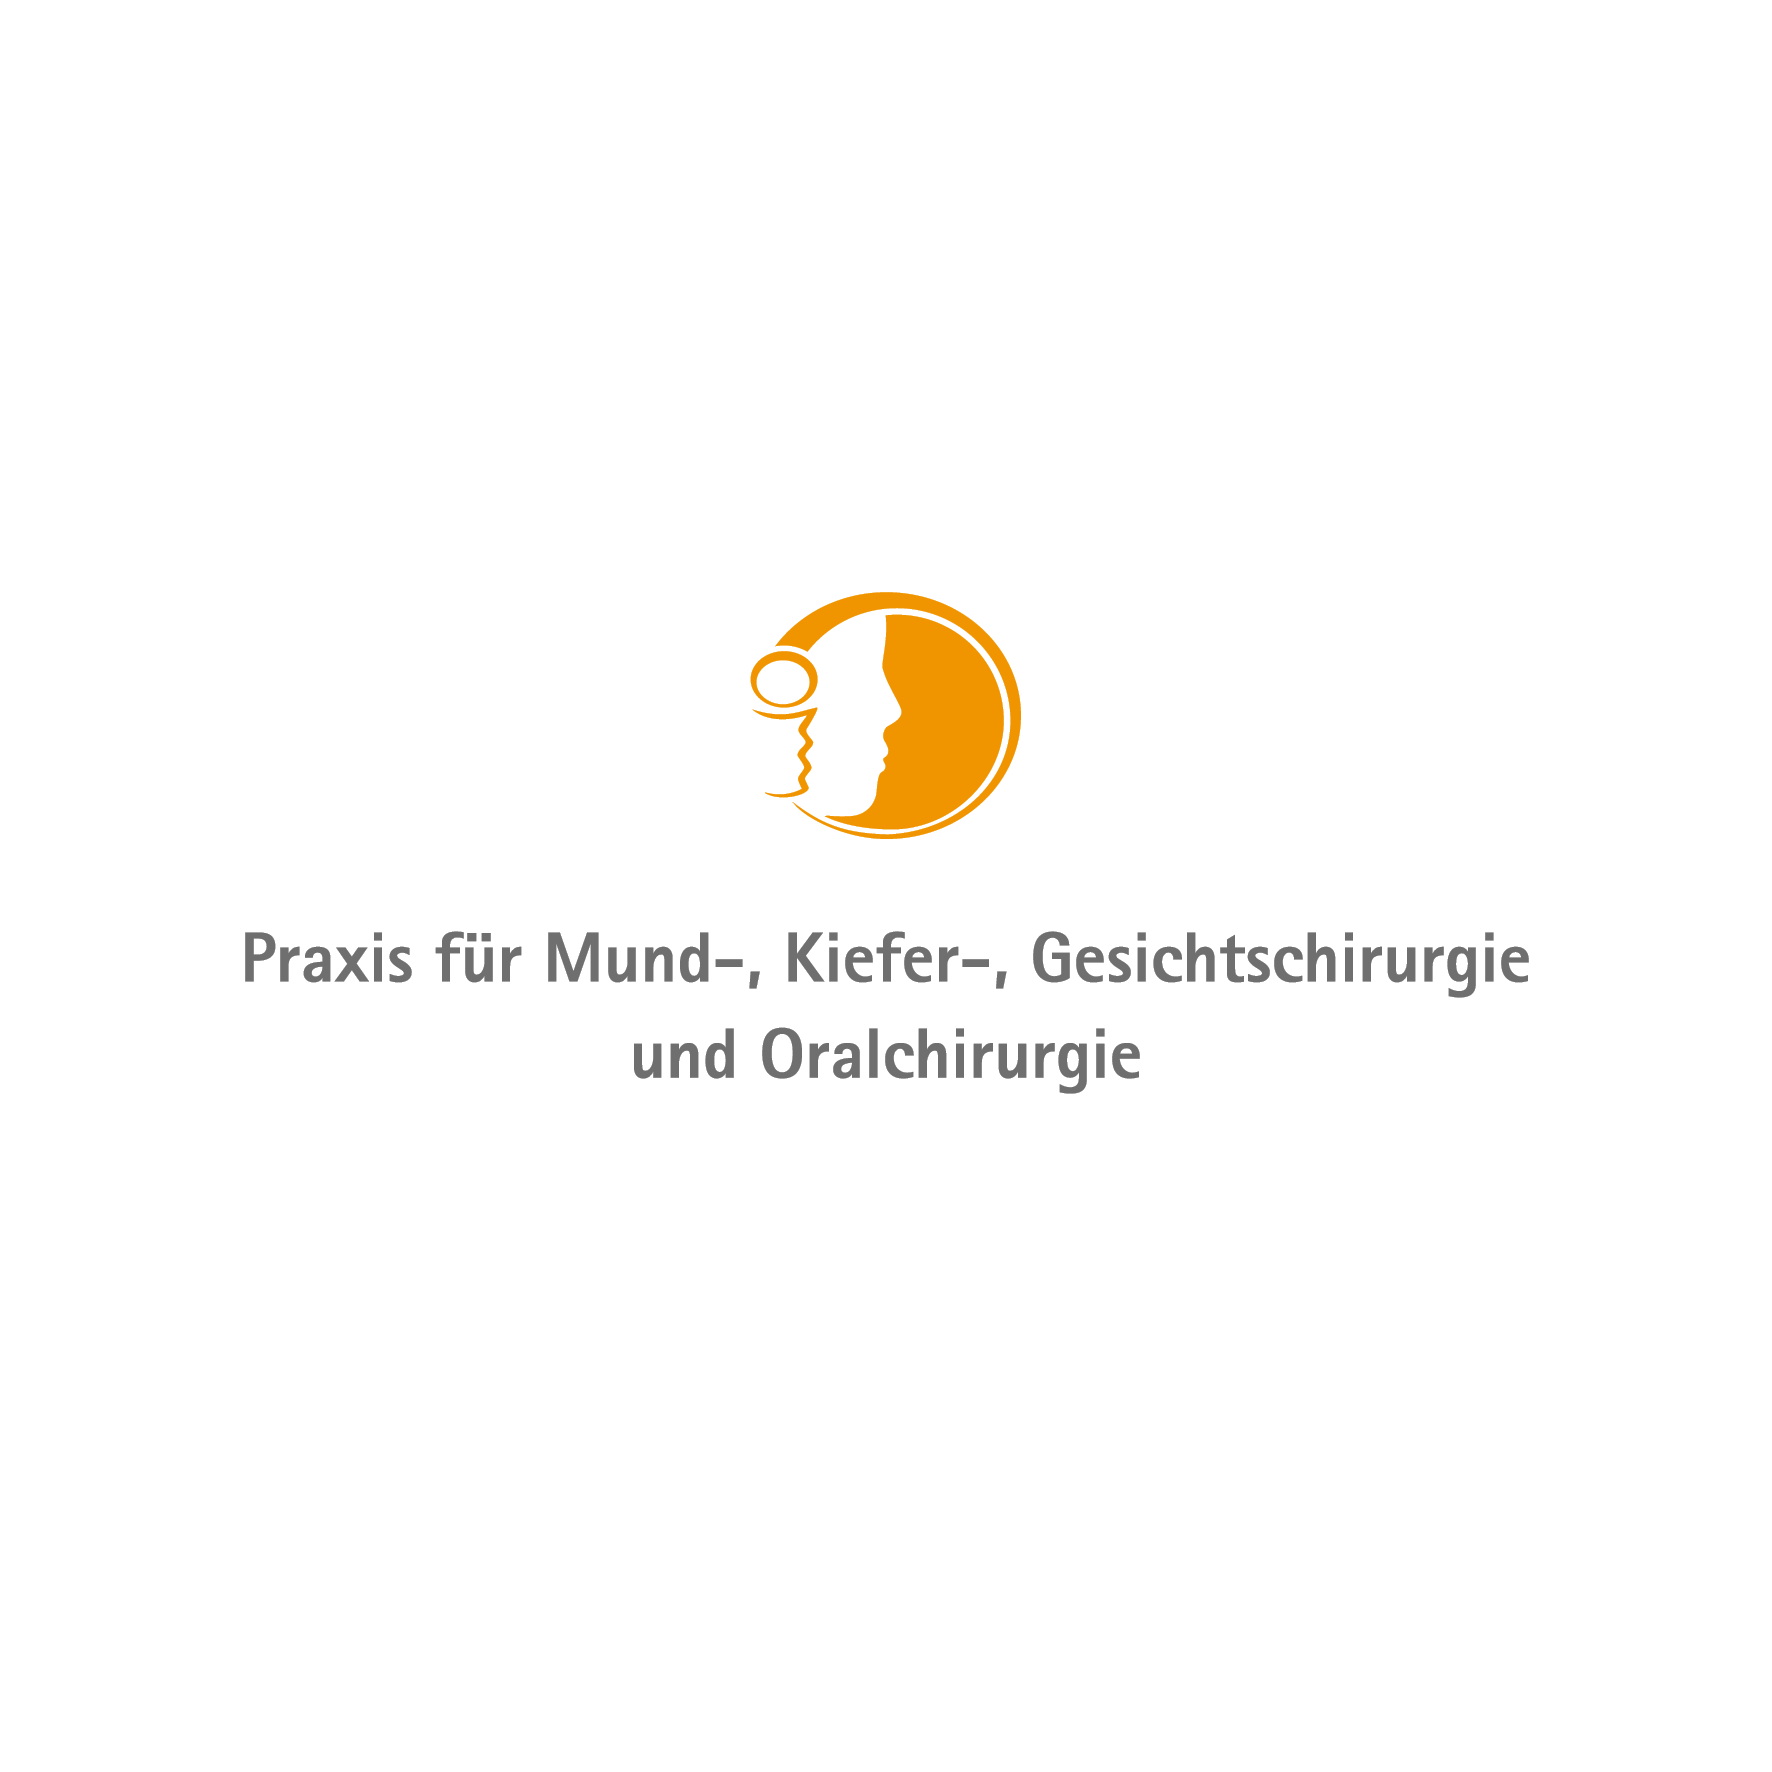 Praxis für Mund-, Kiefer-, Gesichtschirurgie und Oralchirurgie Tauberbischofsheim Logo